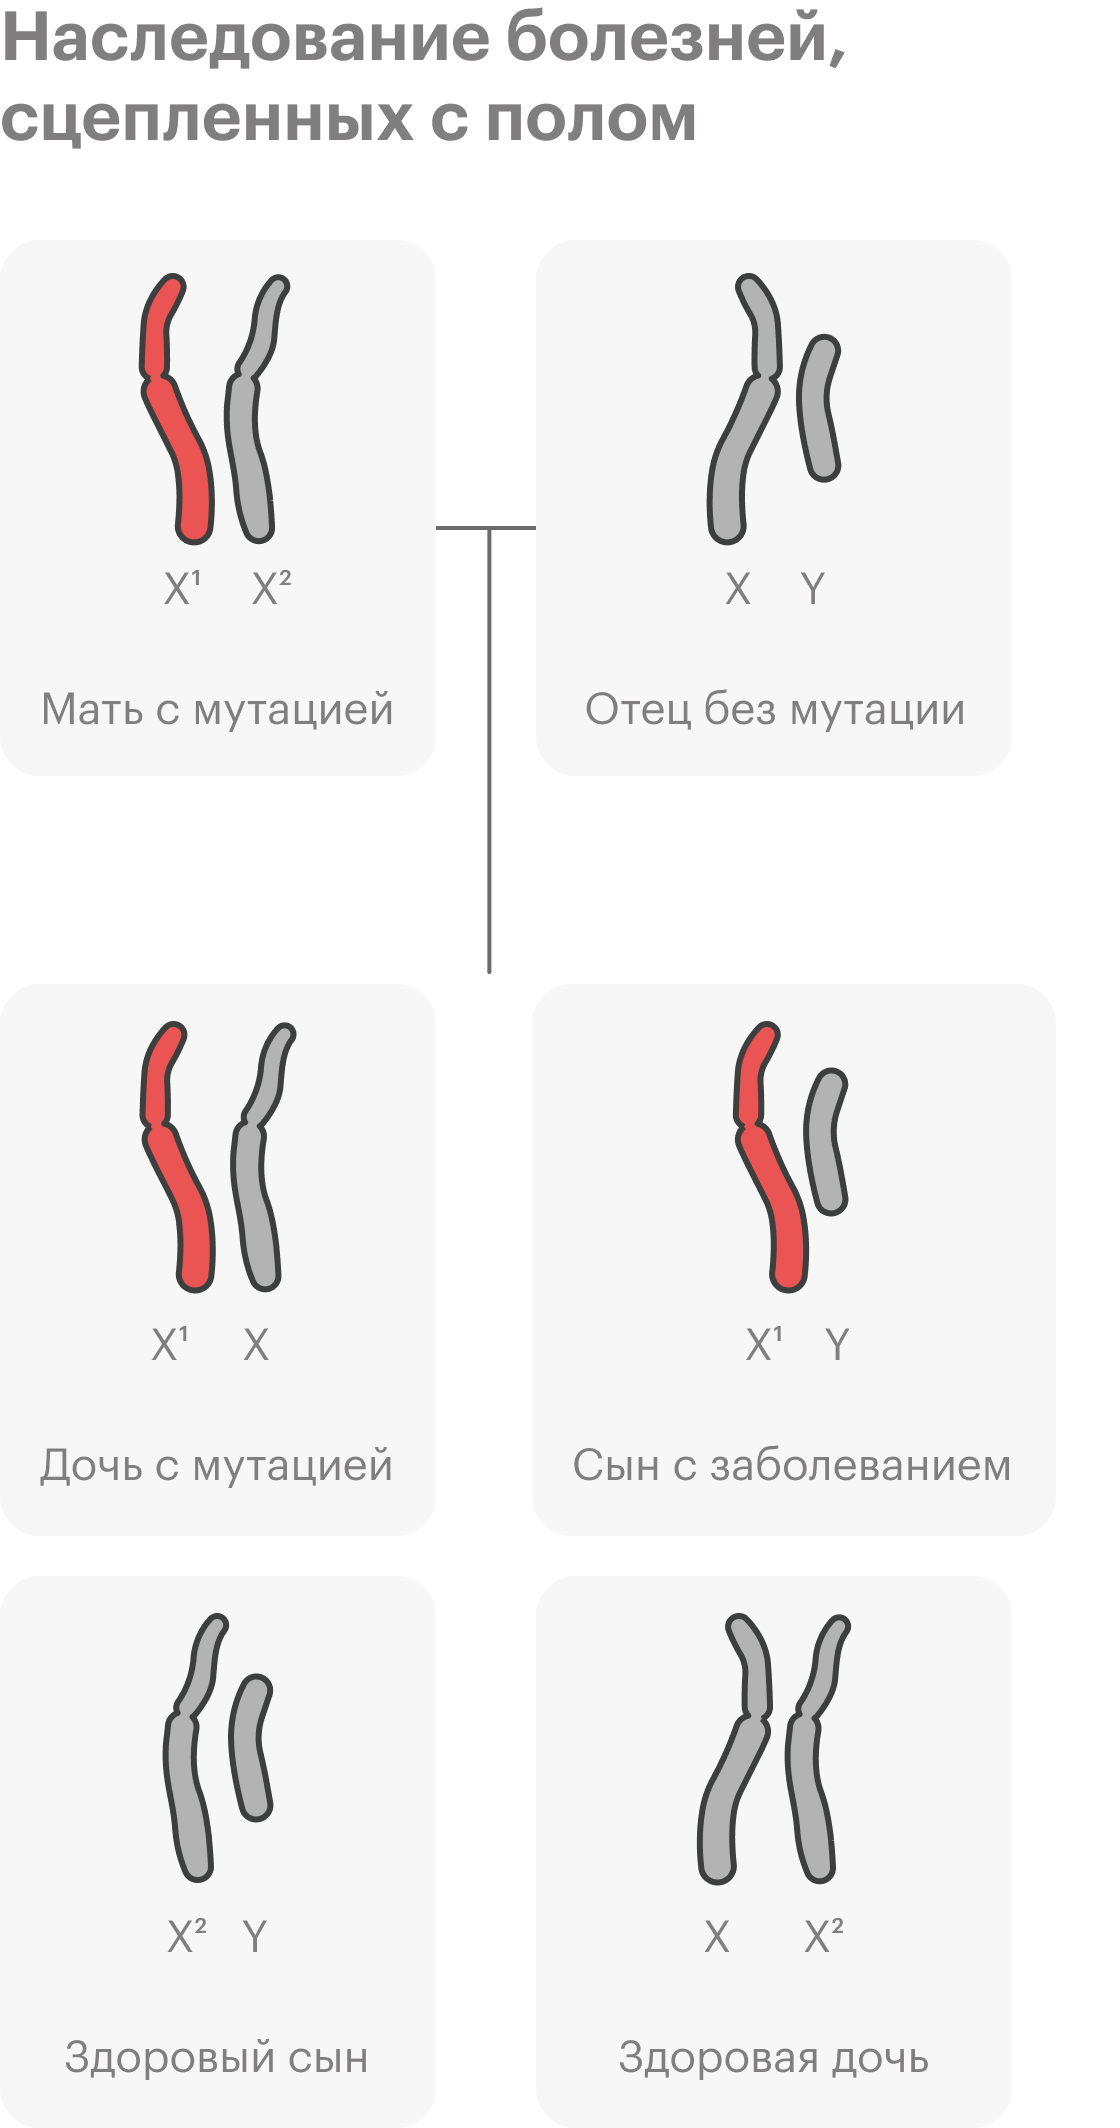 Еще один вариант наследования — наследование, сцепленное с&nbsp;полом. Самый известный пример заболевания, сцепленного с&nbsp;полом — гемофилия. Упрощенно говоря, есть гены, связанные с&nbsp;половыми хромосомами. У&nbsp;человека заболевания обычно связаны с&nbsp;женской X-хромосомой. Если одна из&nbsp;копий гена, сцепленного с X-хромосомой, может вызывать болезнь, болеть будут в&nbsp;основном мальчики. У девочек две X-хромосомы — даже если одна с&nbsp;мутацией, есть второй, здоровый ген, и&nbsp;признак не&nbsp;проявляется. Но&nbsp;они будут носительницами заболевания и могут передать его своим сыновьям